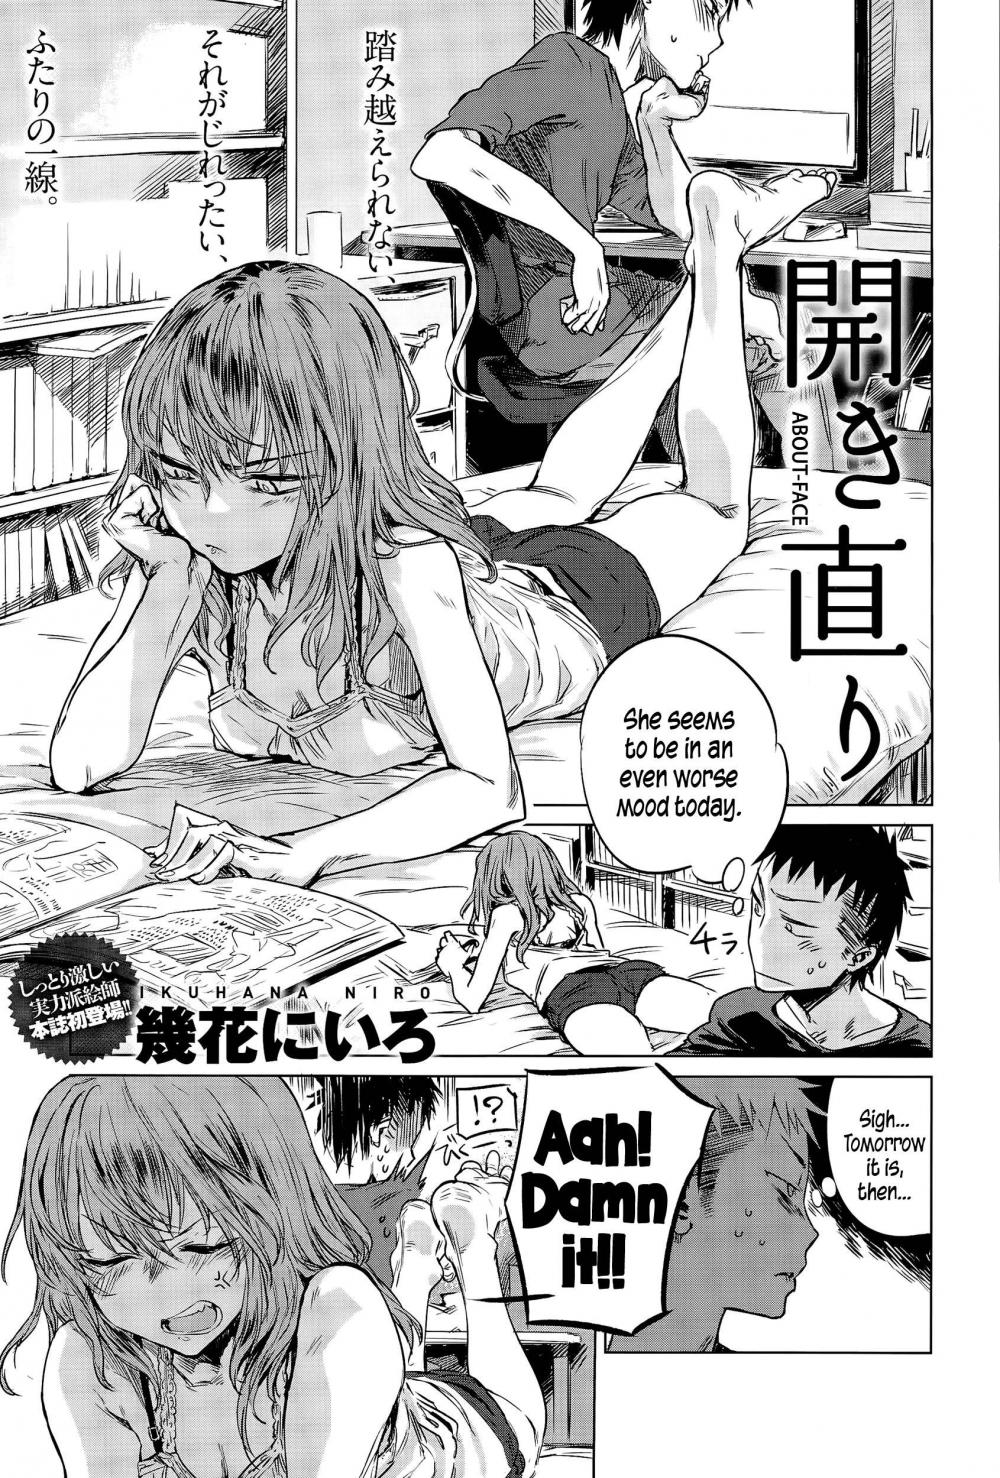 Erotic hentai manga